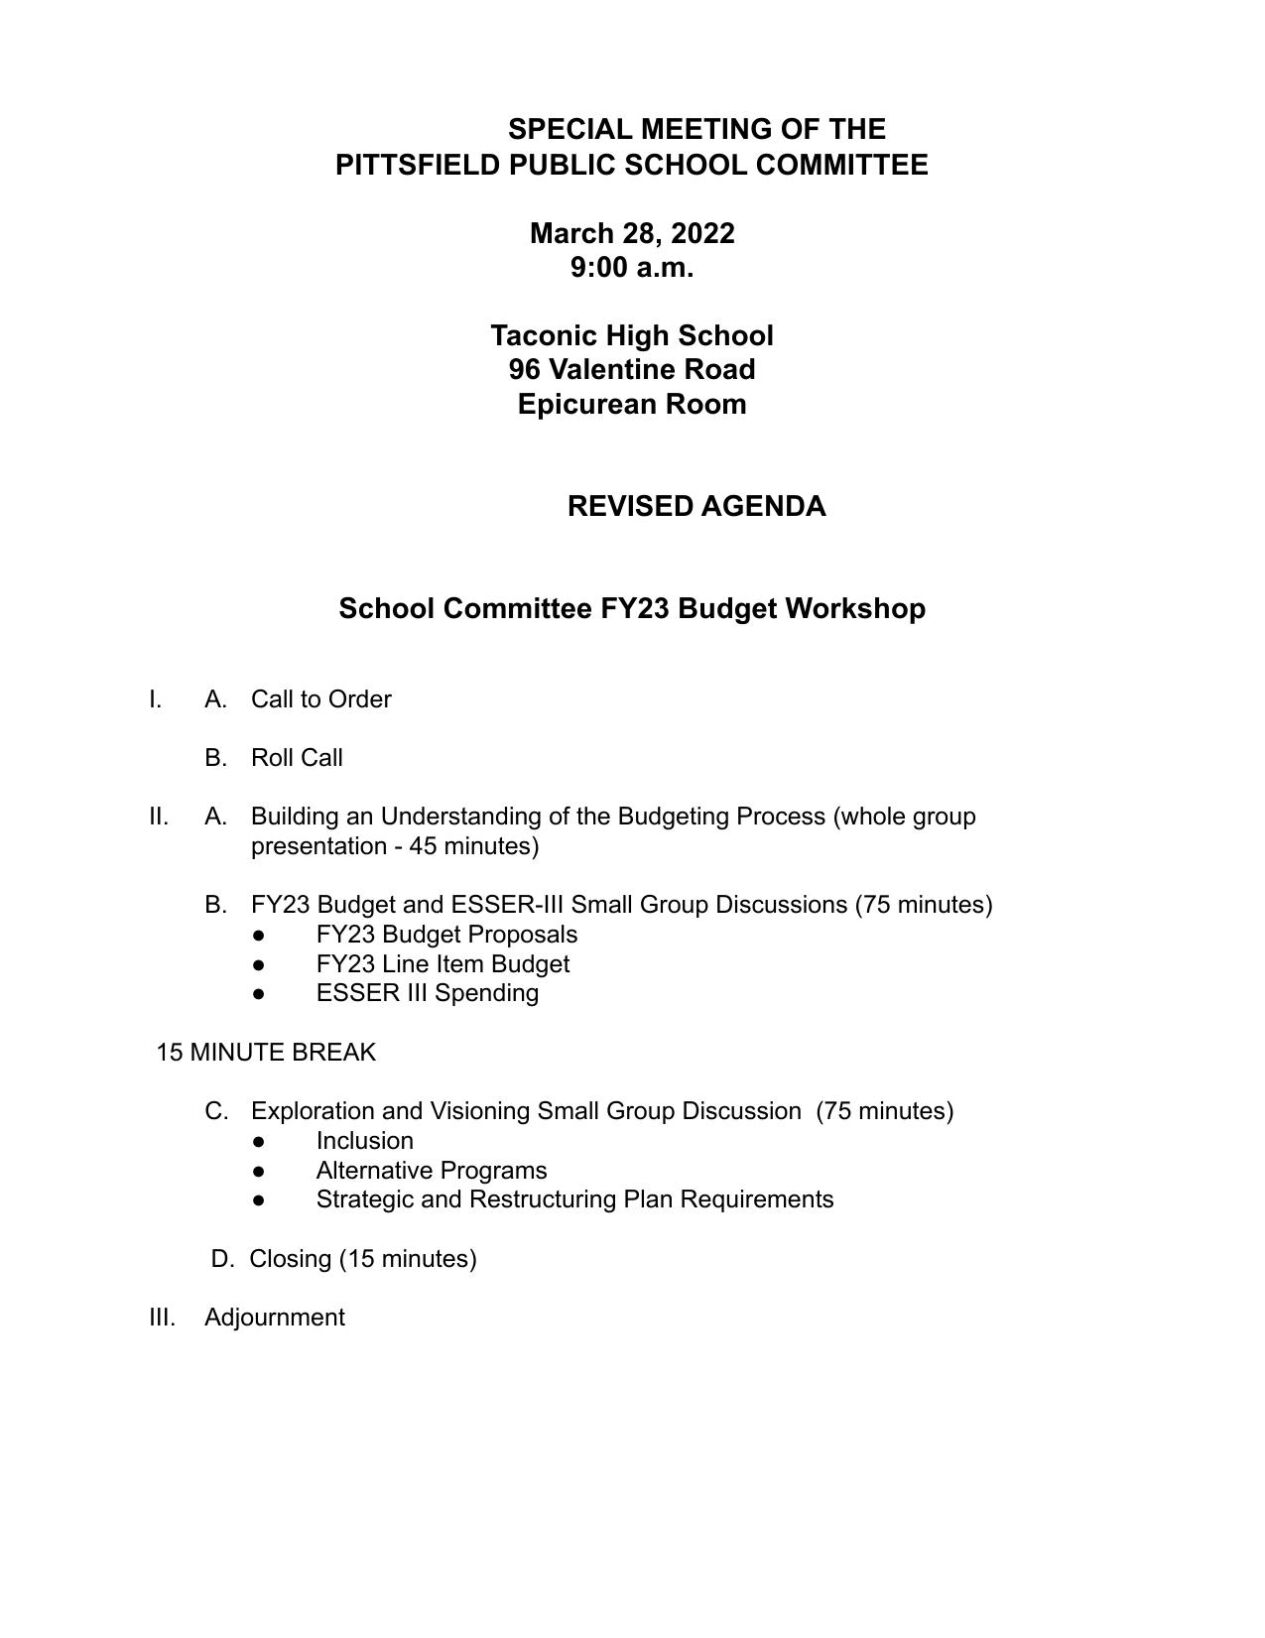 March 28 School Committee Budget Workshop Agenda